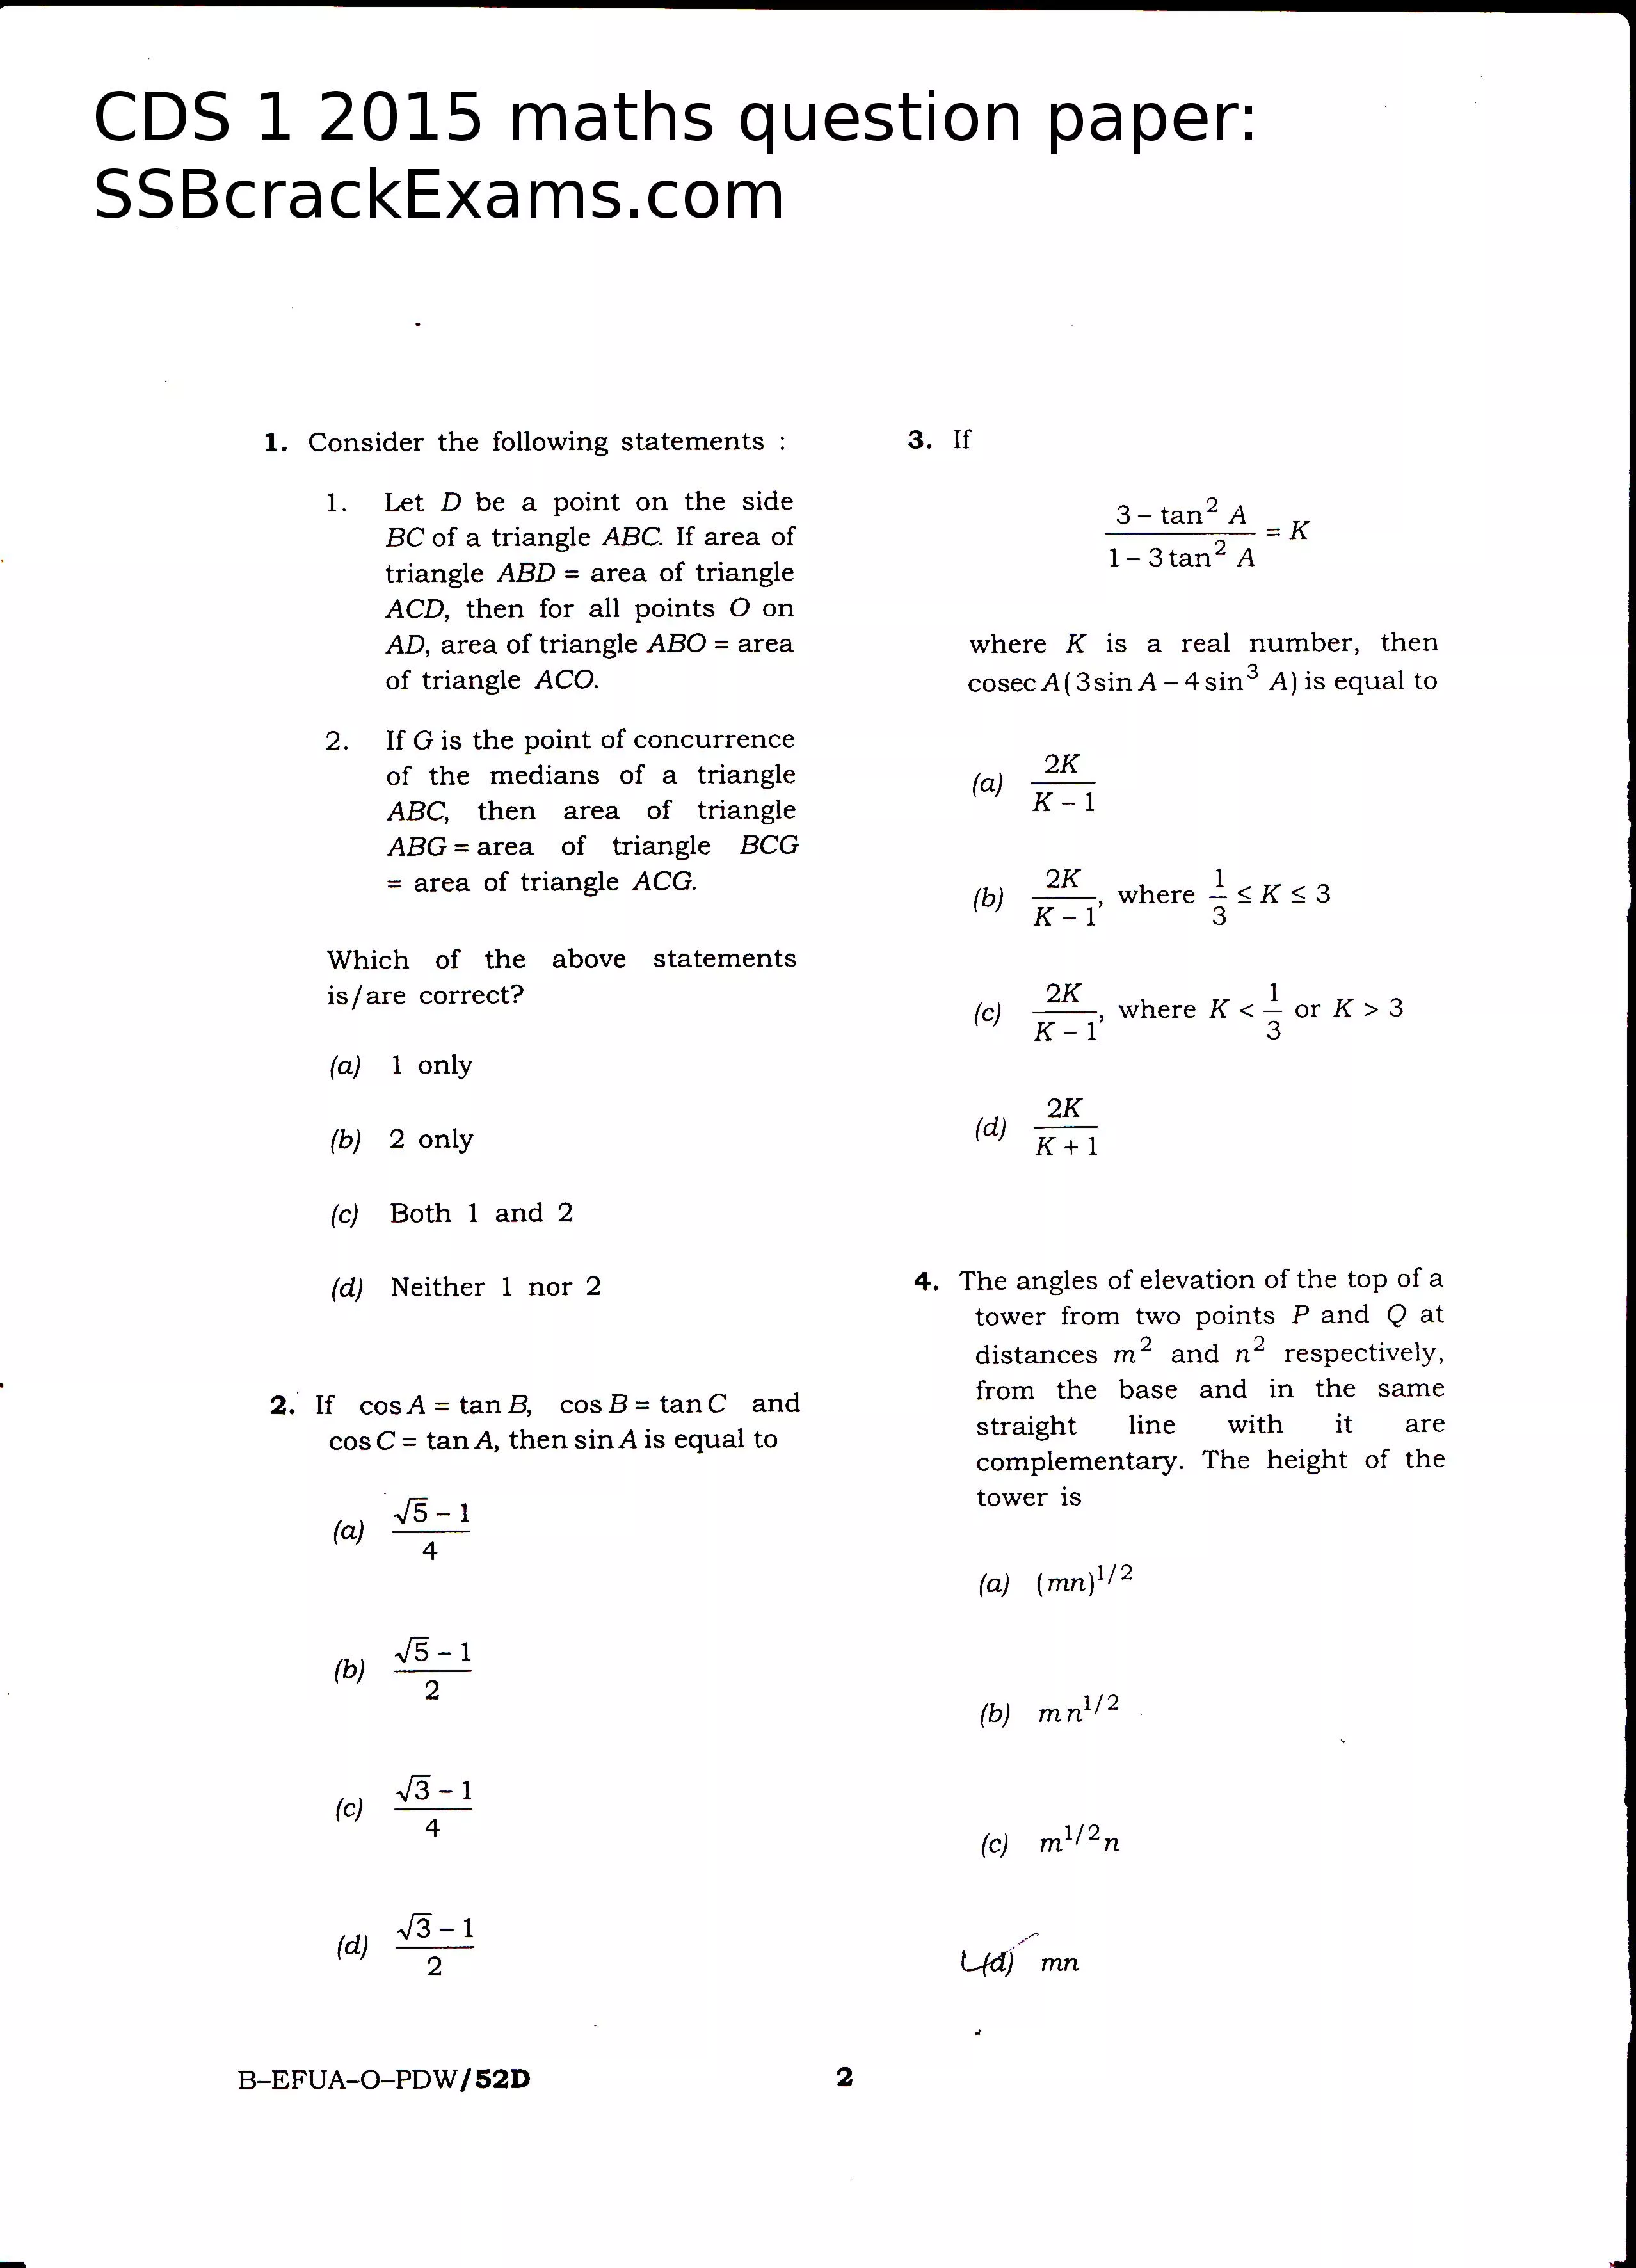 CDS 1 2015 maths question paper: